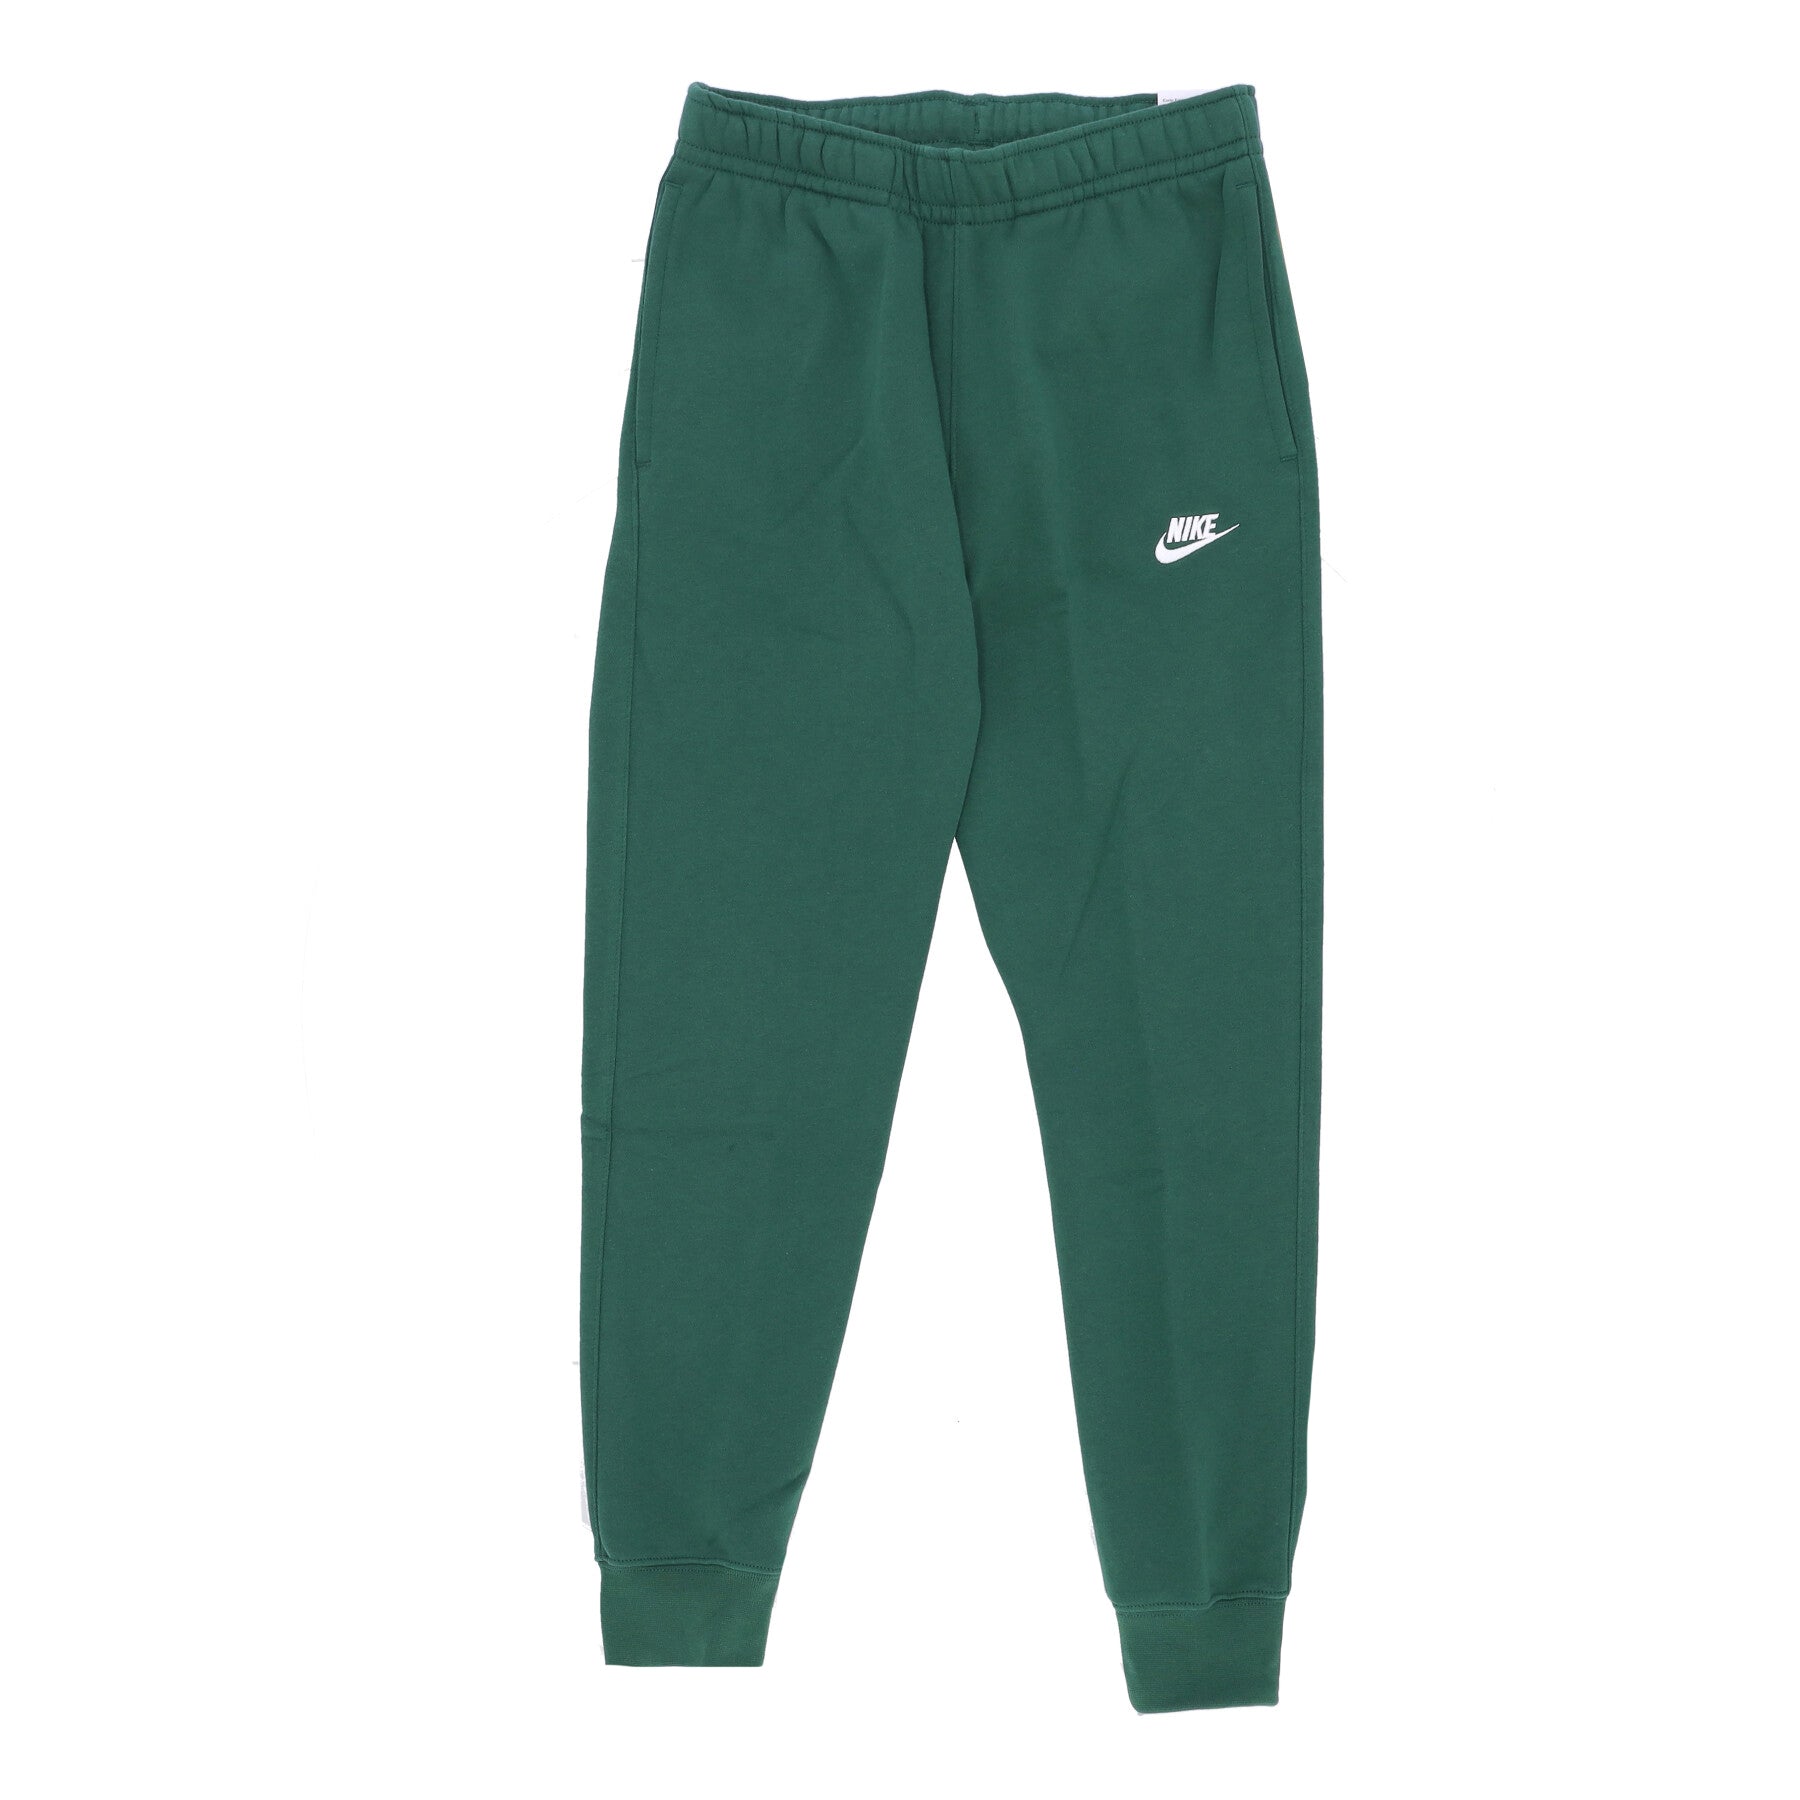 Nike, Pantalone Tuta Felpato Uomo Club Jogger Bb, Gorge Green/gorge Green/white